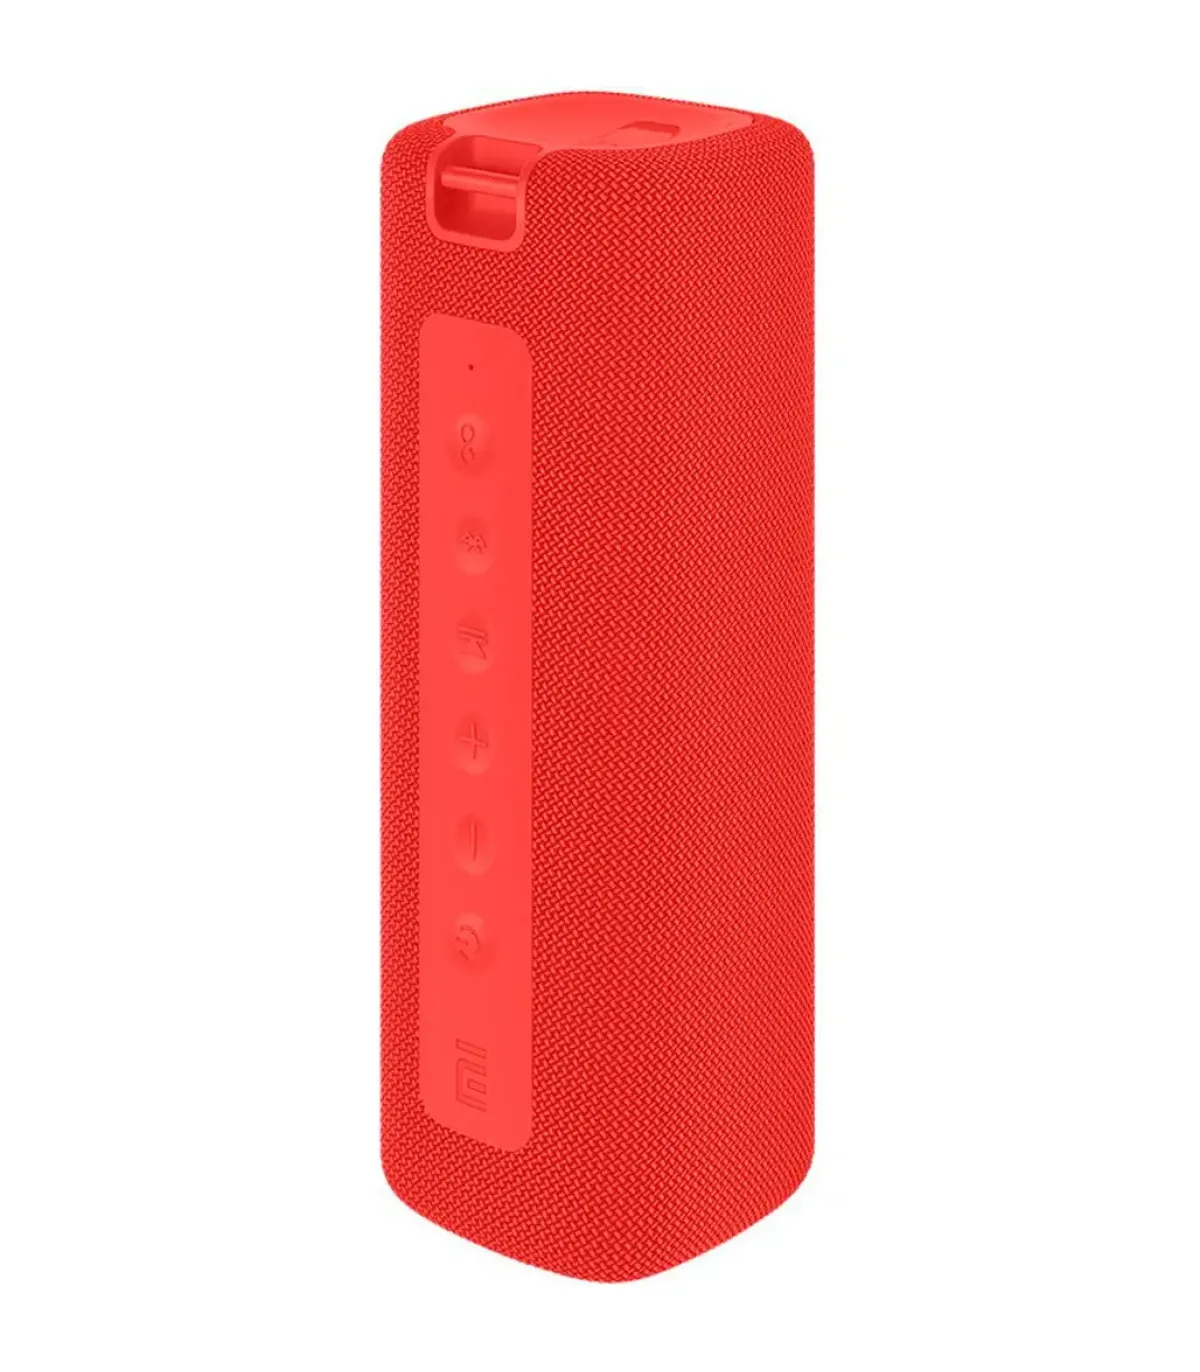 Xiaomi Mi Portable Altavoz Bluetooth 5.0 16W - Autonomia hasta 13h -  Resistencia al Agua IPX7 - Manos Libres - Color Rojo